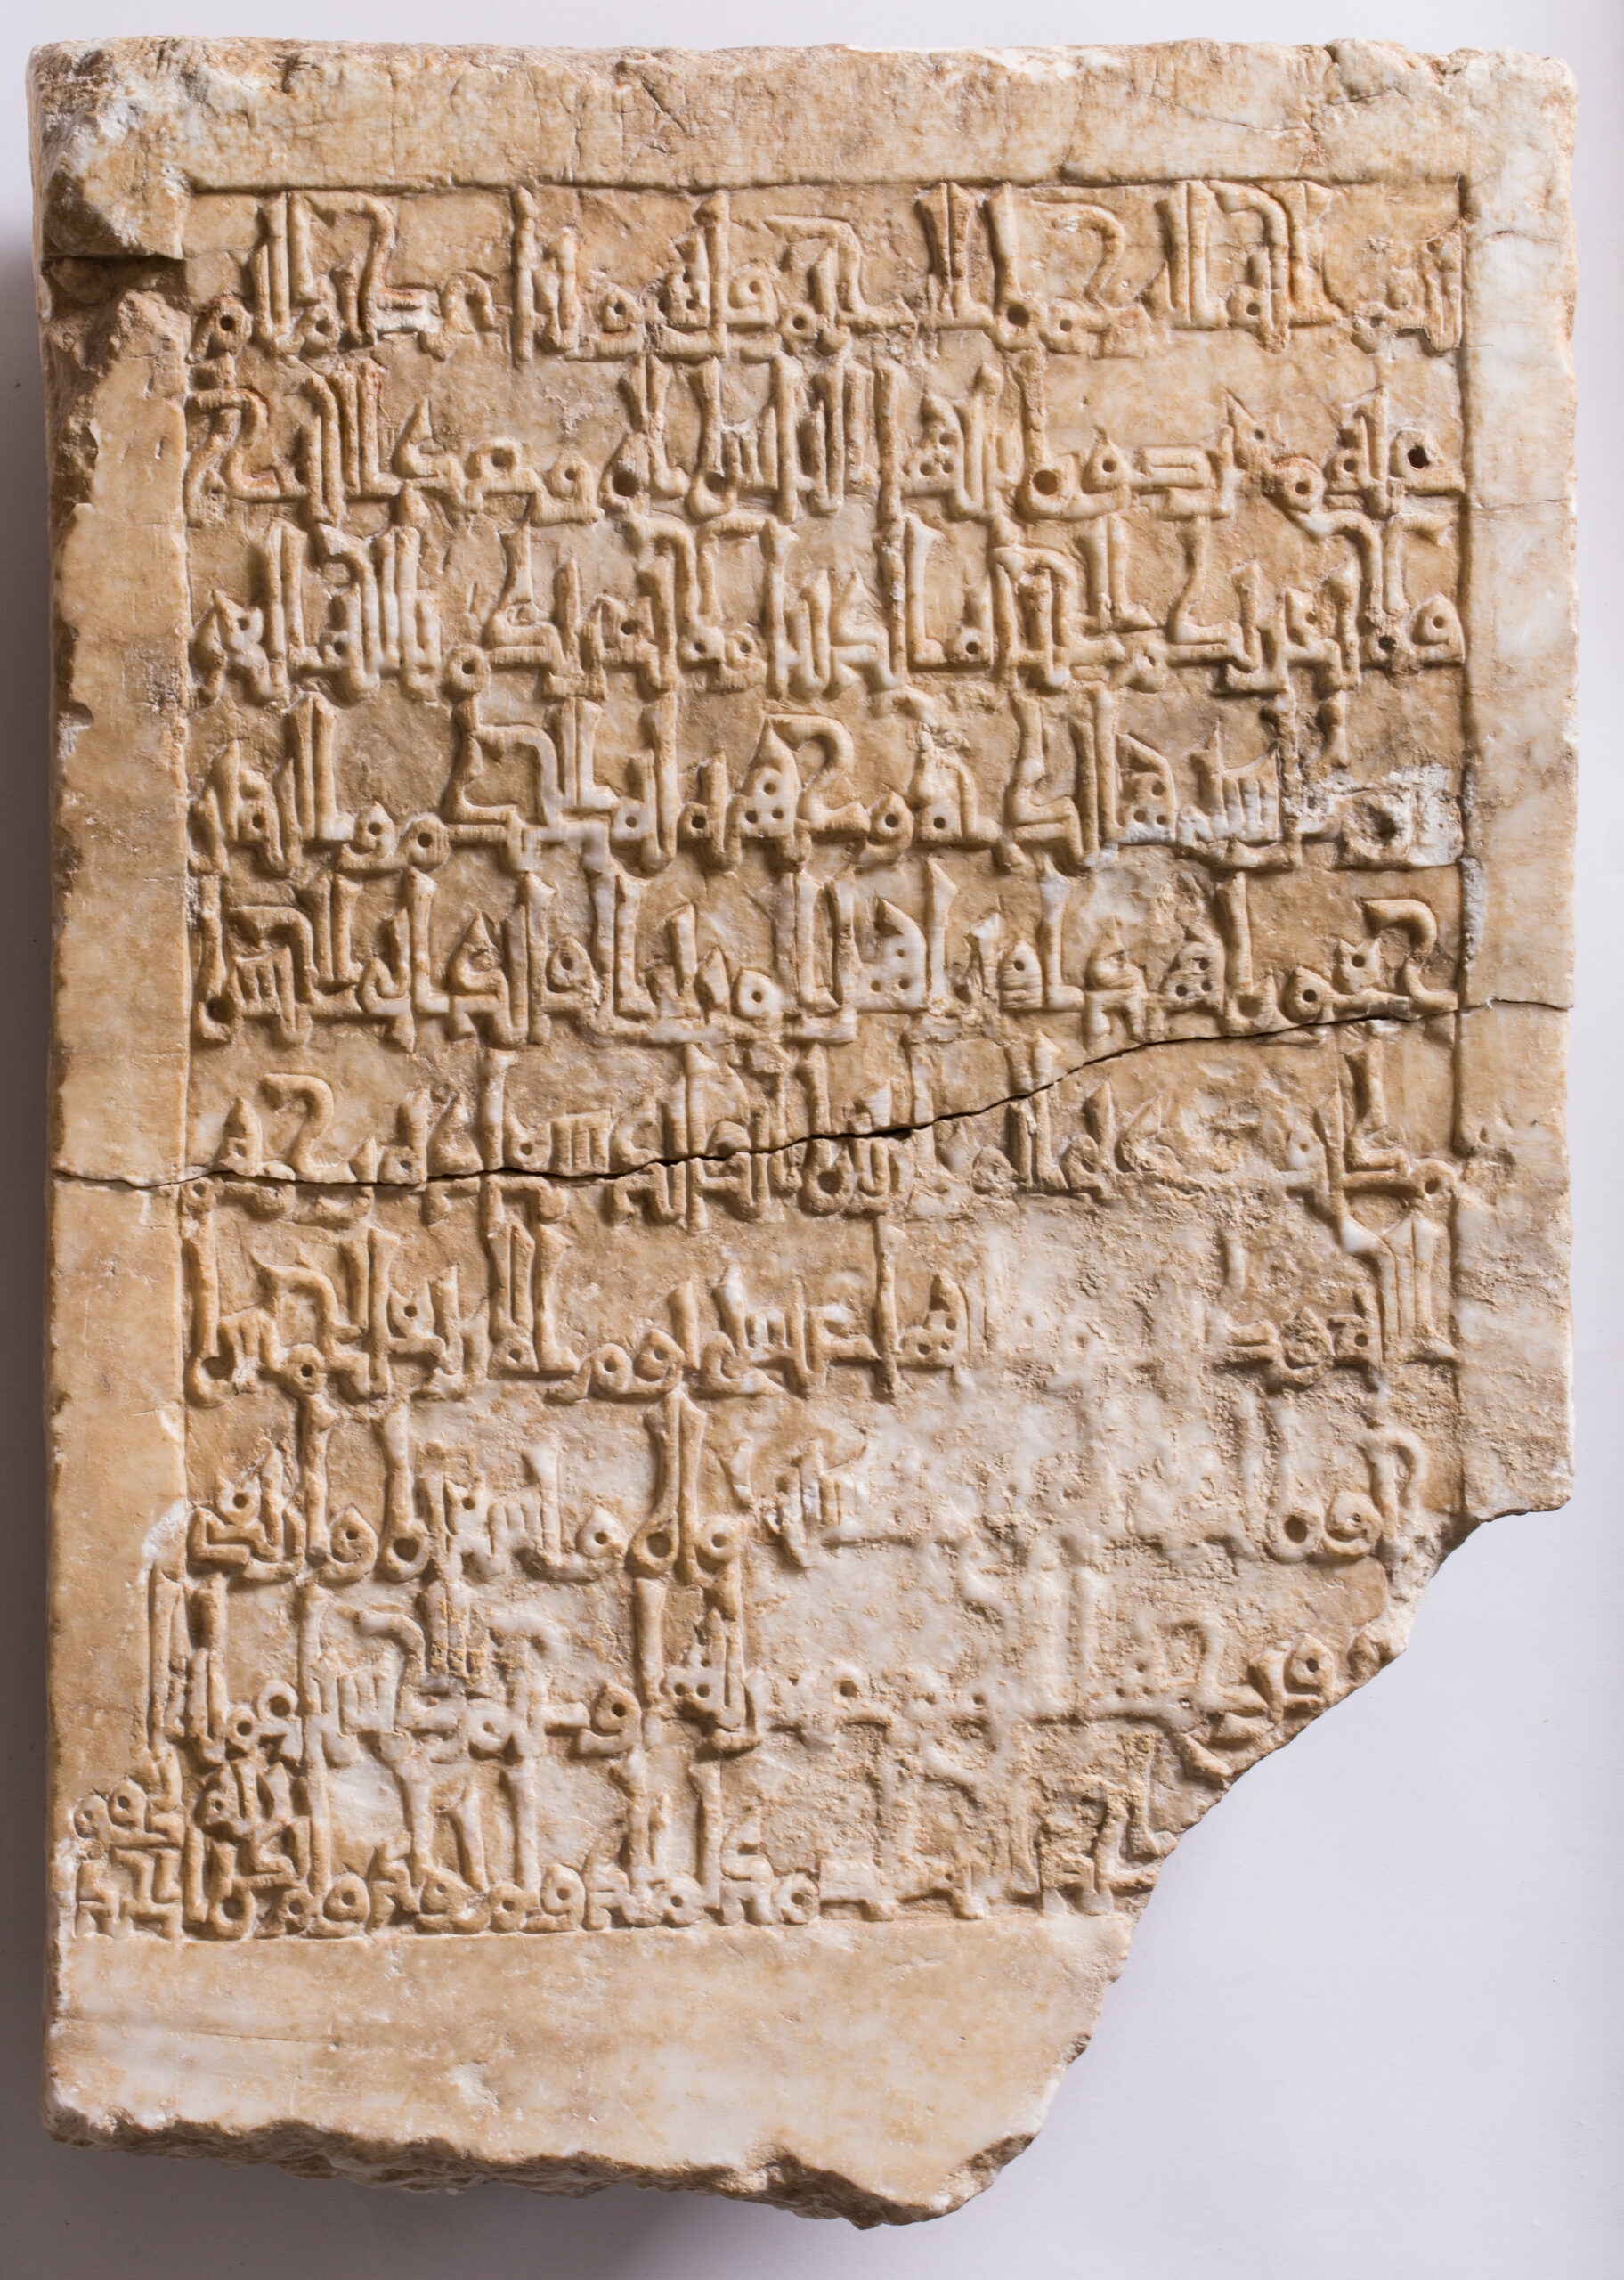 Lápida funeraria con inscripción en caracteres árabes, 498 de la Hégira (1105 AD). Alabastro esculpido, Rueda de Jalón (Zaragoza). Foto: J.Garrido. Museo de Zaragoza.